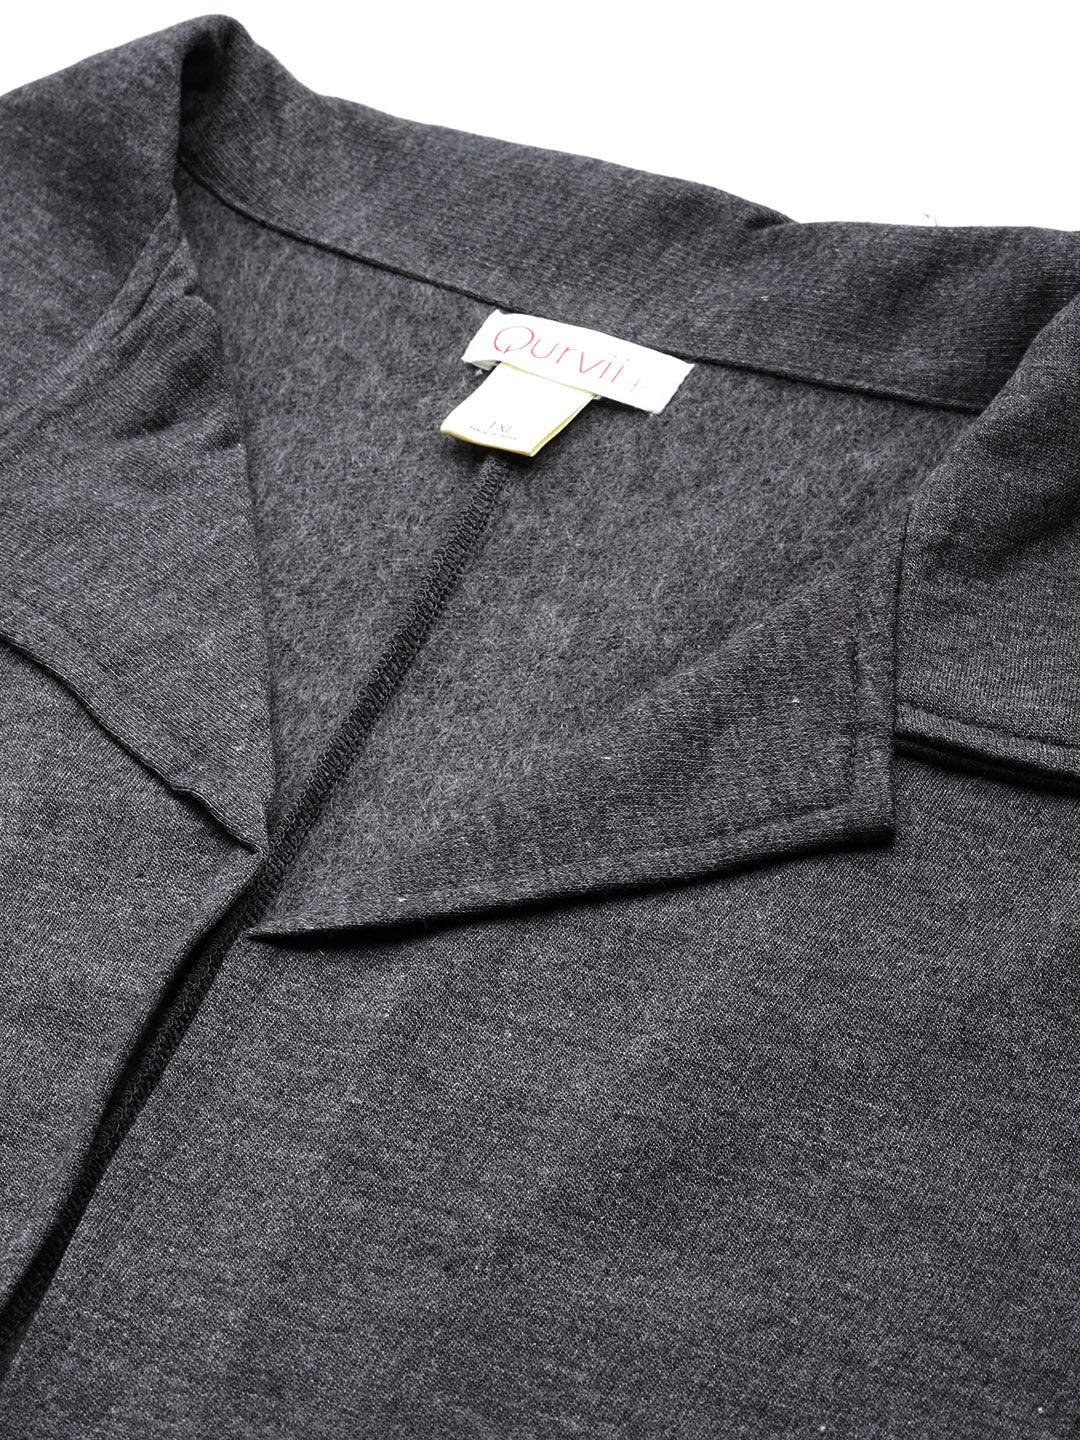 Solid Charcoal gray fleece long jacket